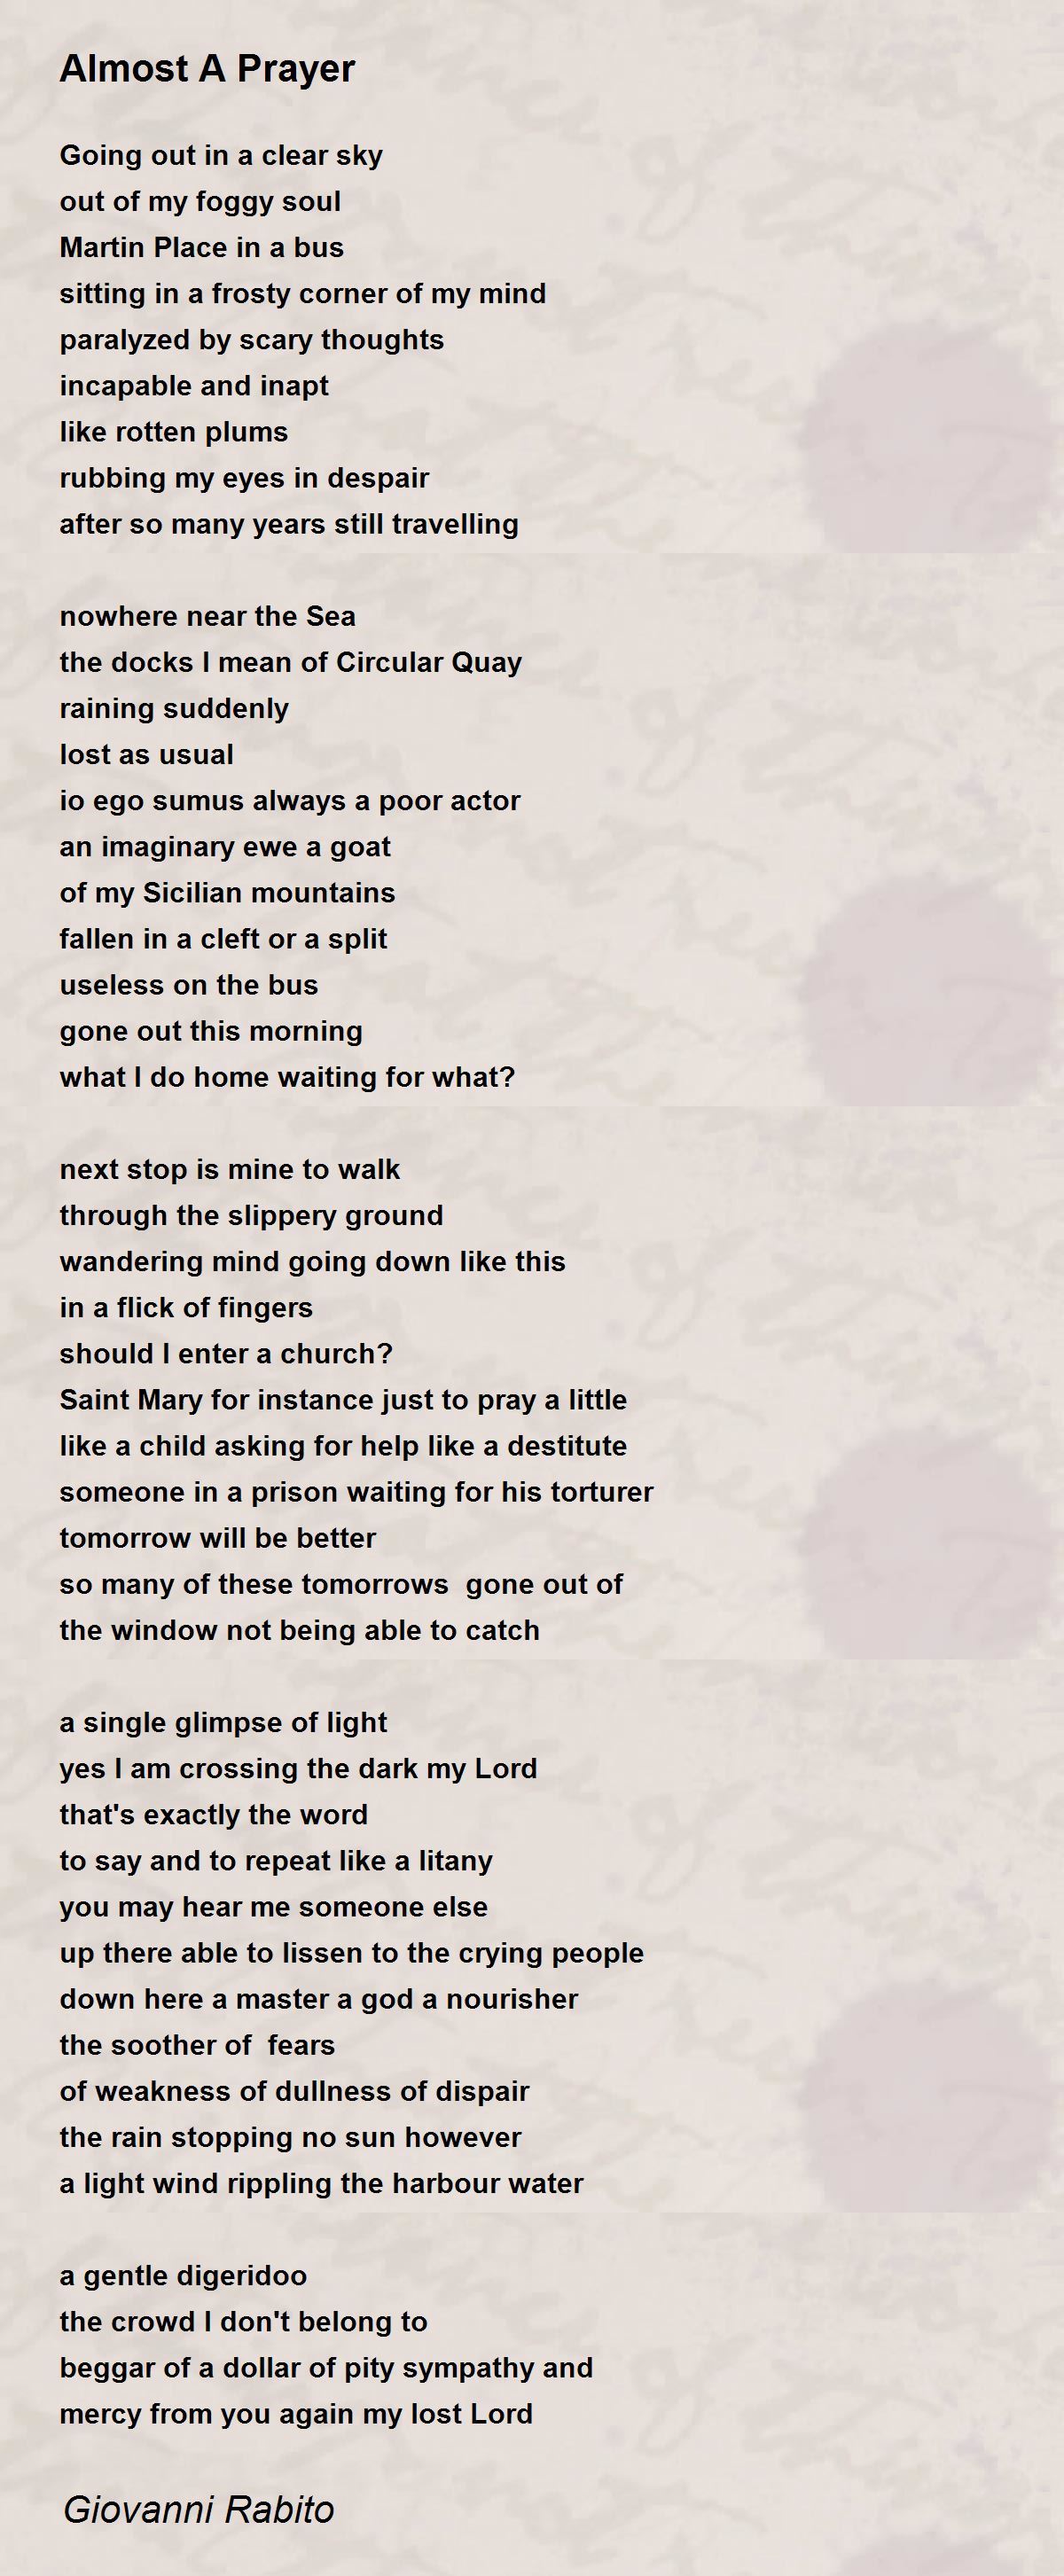 Almost A Prayer - Almost A Prayer Poem by Giovanni Rabito